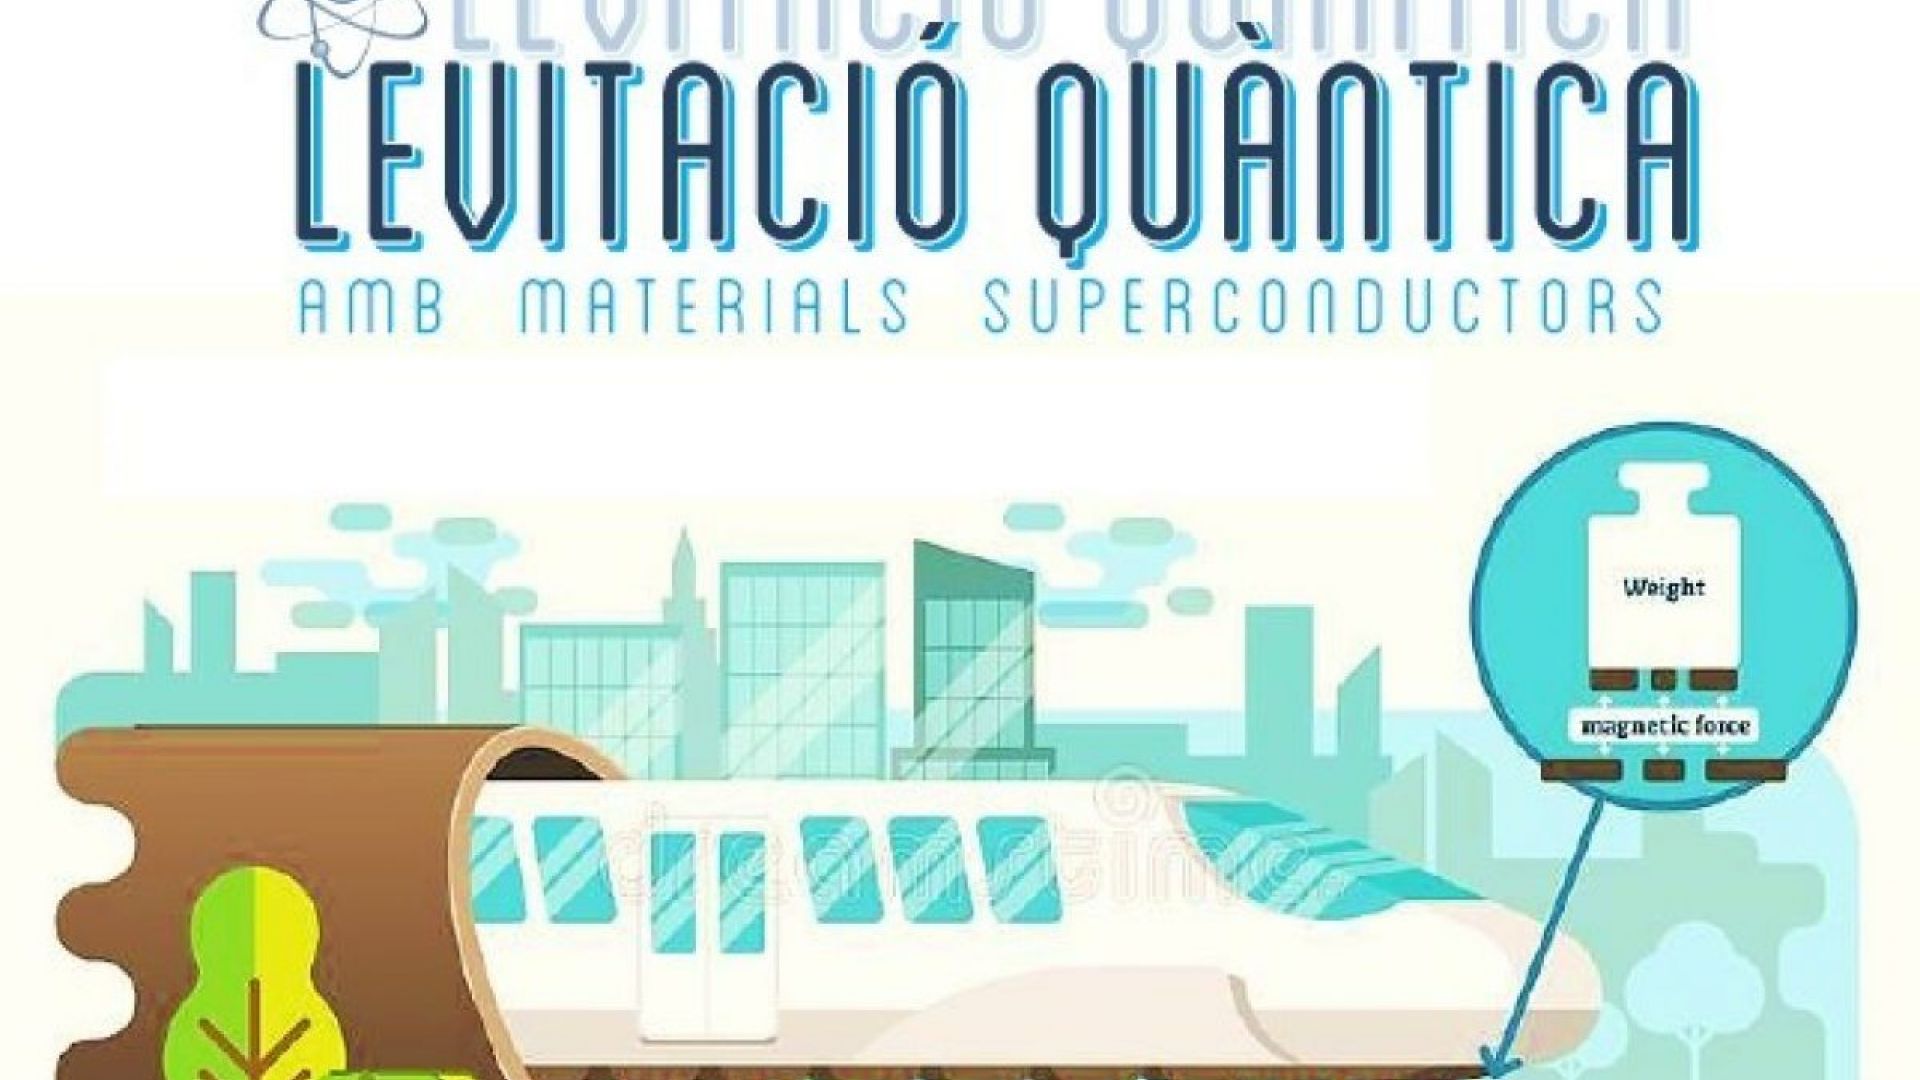 “Levitació quàntica amb materials superconductors” in Sant Celoni